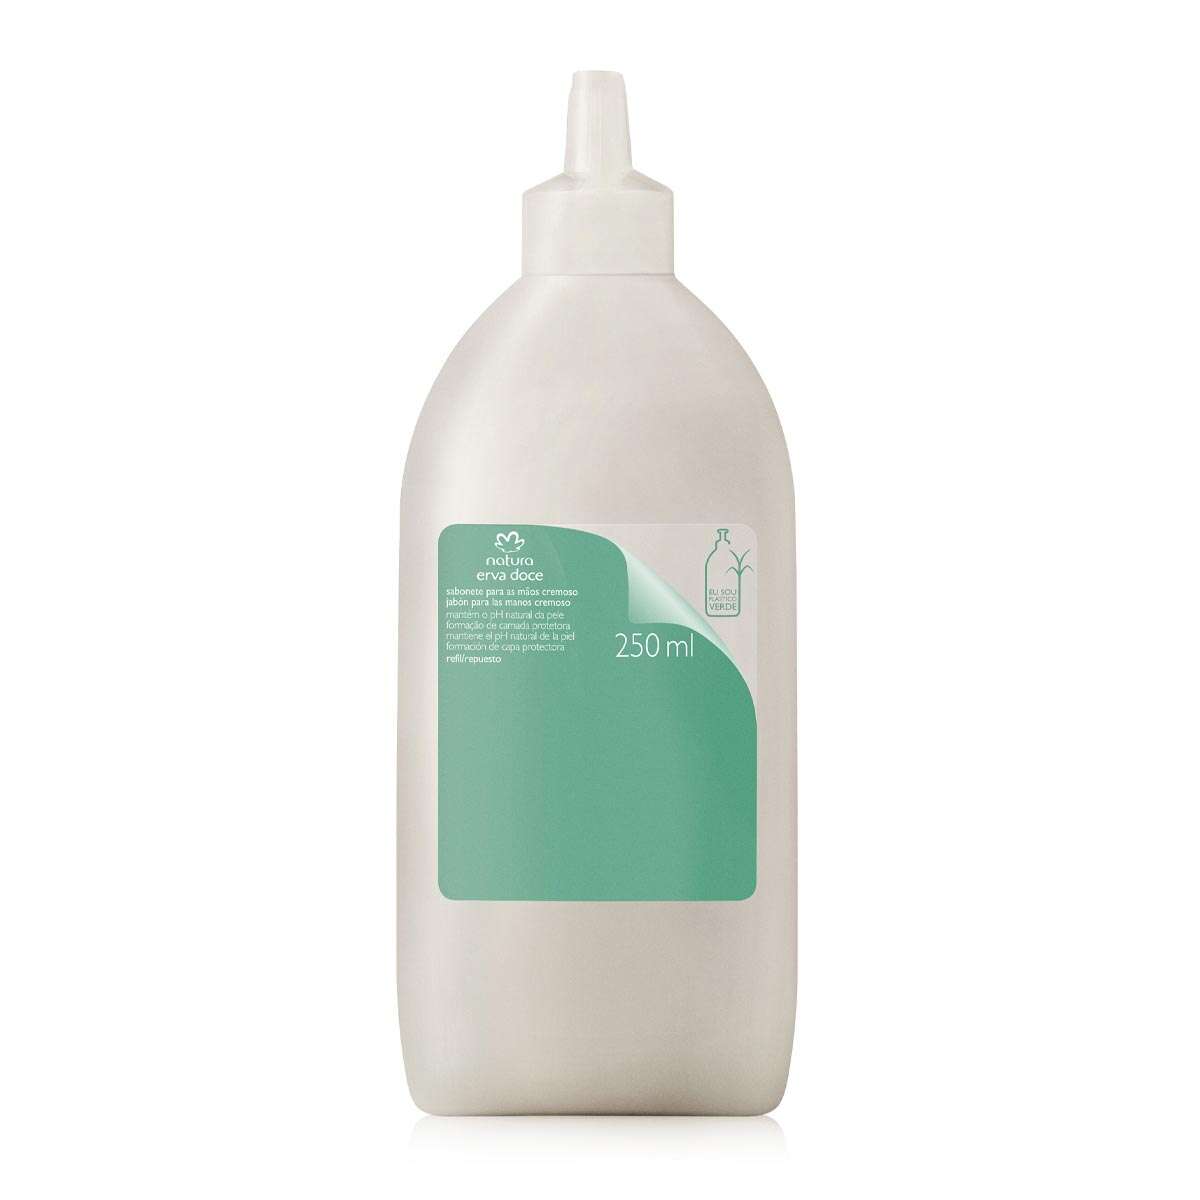 Erva Doce Creamy Liquid Hand Soap Refill - 250ml